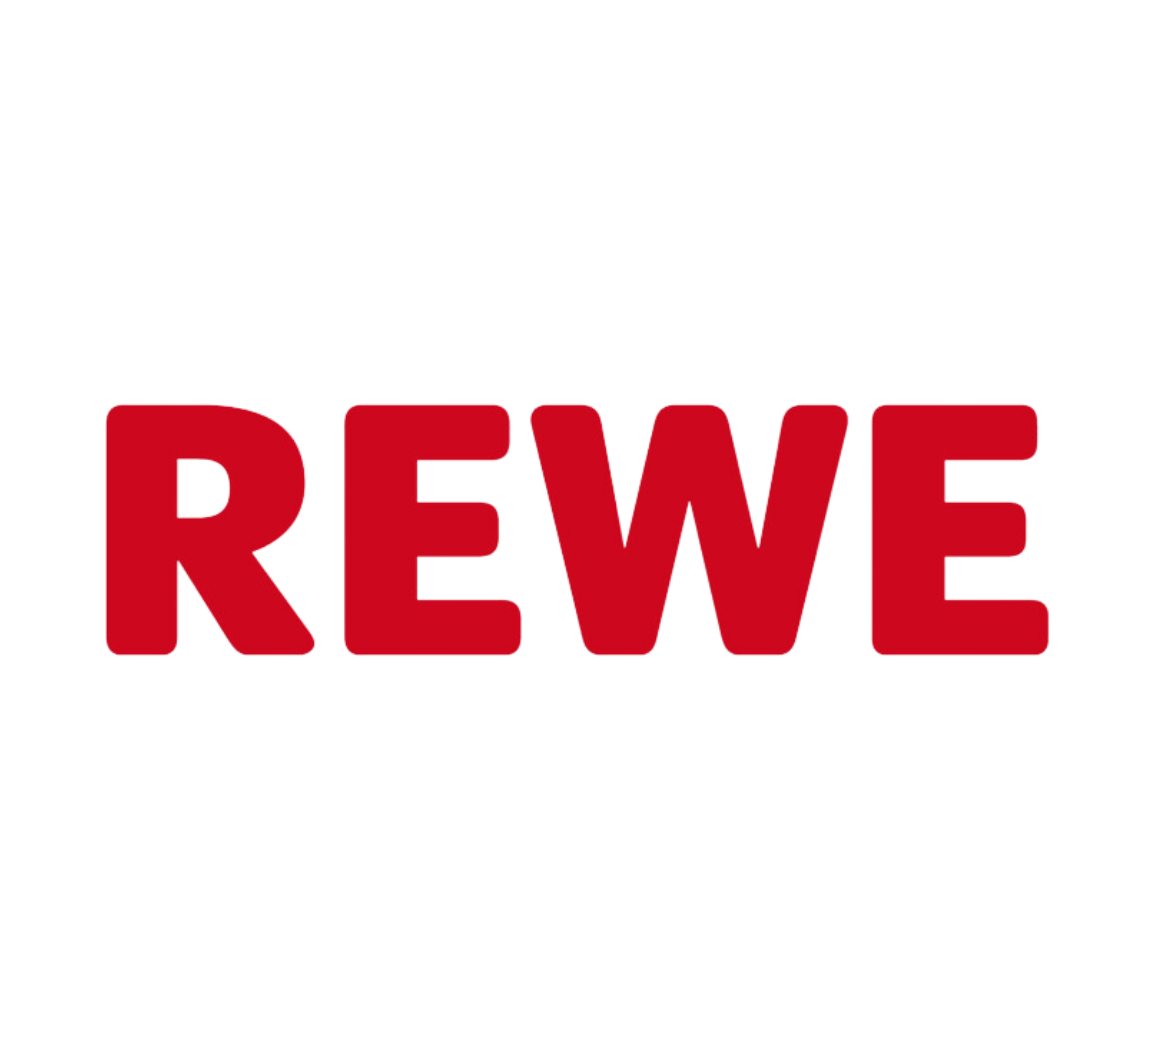 Ladengeschäft und Online-Händler von Valess: Rewe